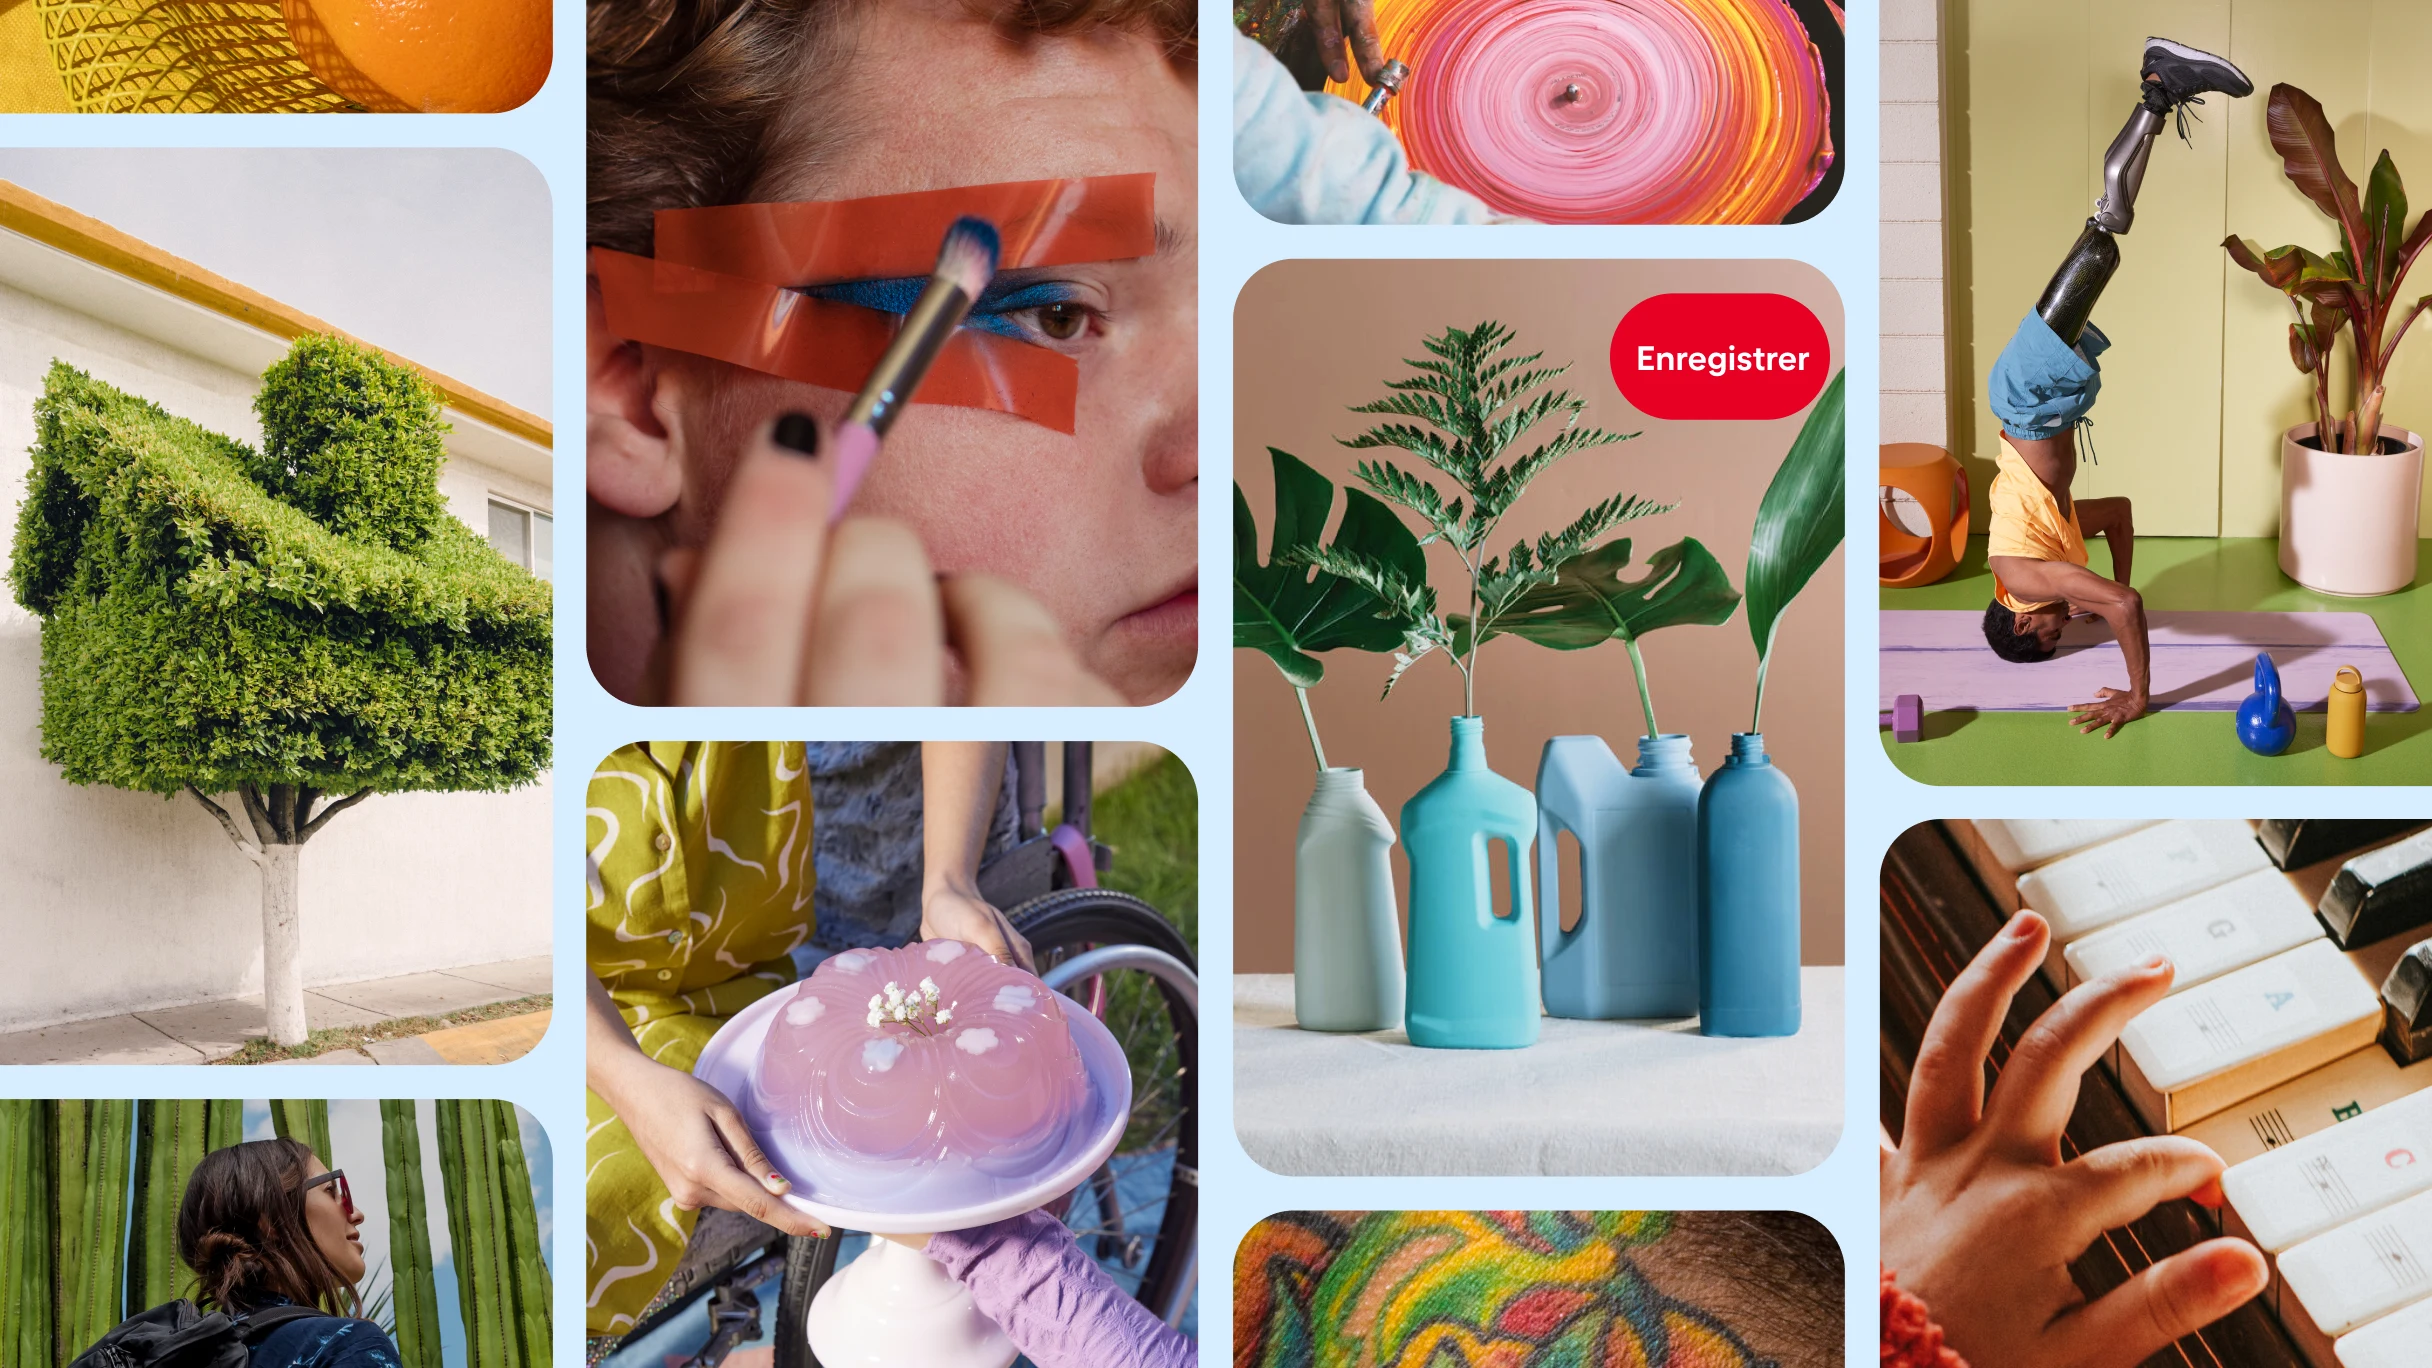  Une page d’accueil Pinterest avec une personne qui applique du maquillage, des plantes vertes dans des vases, une personne avec prothèse de jambe faisant une figure sur la tête, et plus.